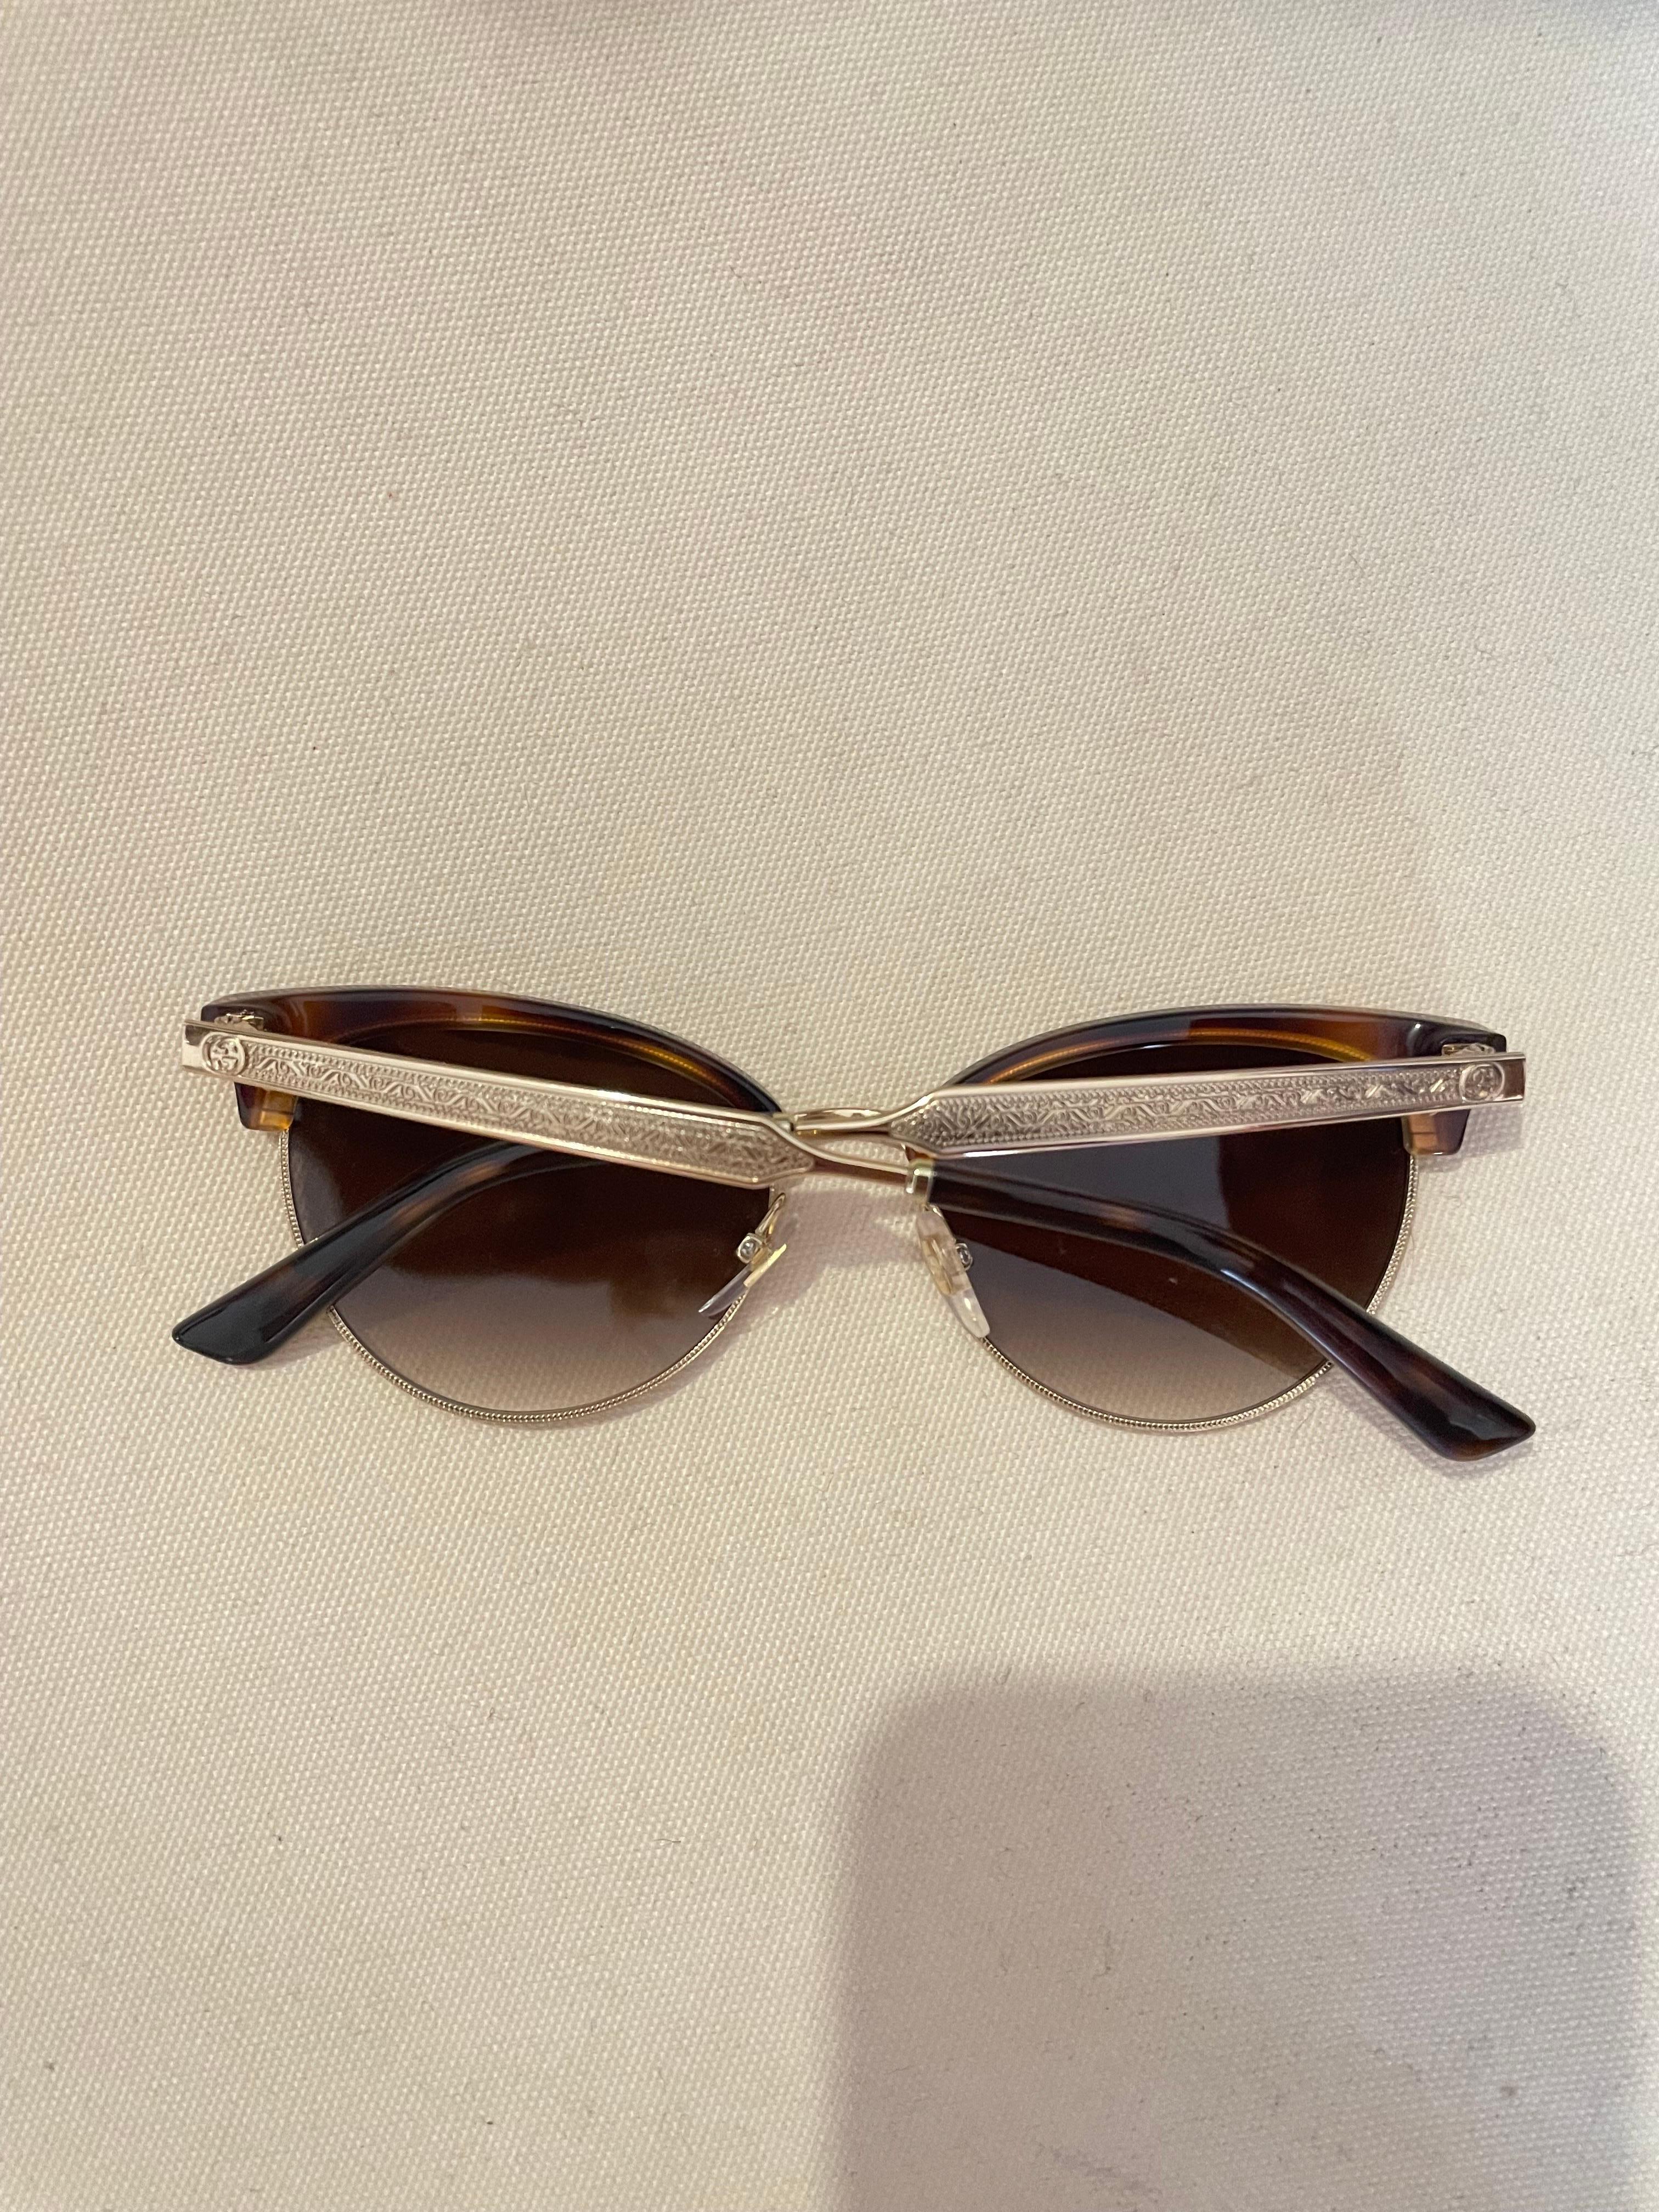 gucci sunglasses women sale